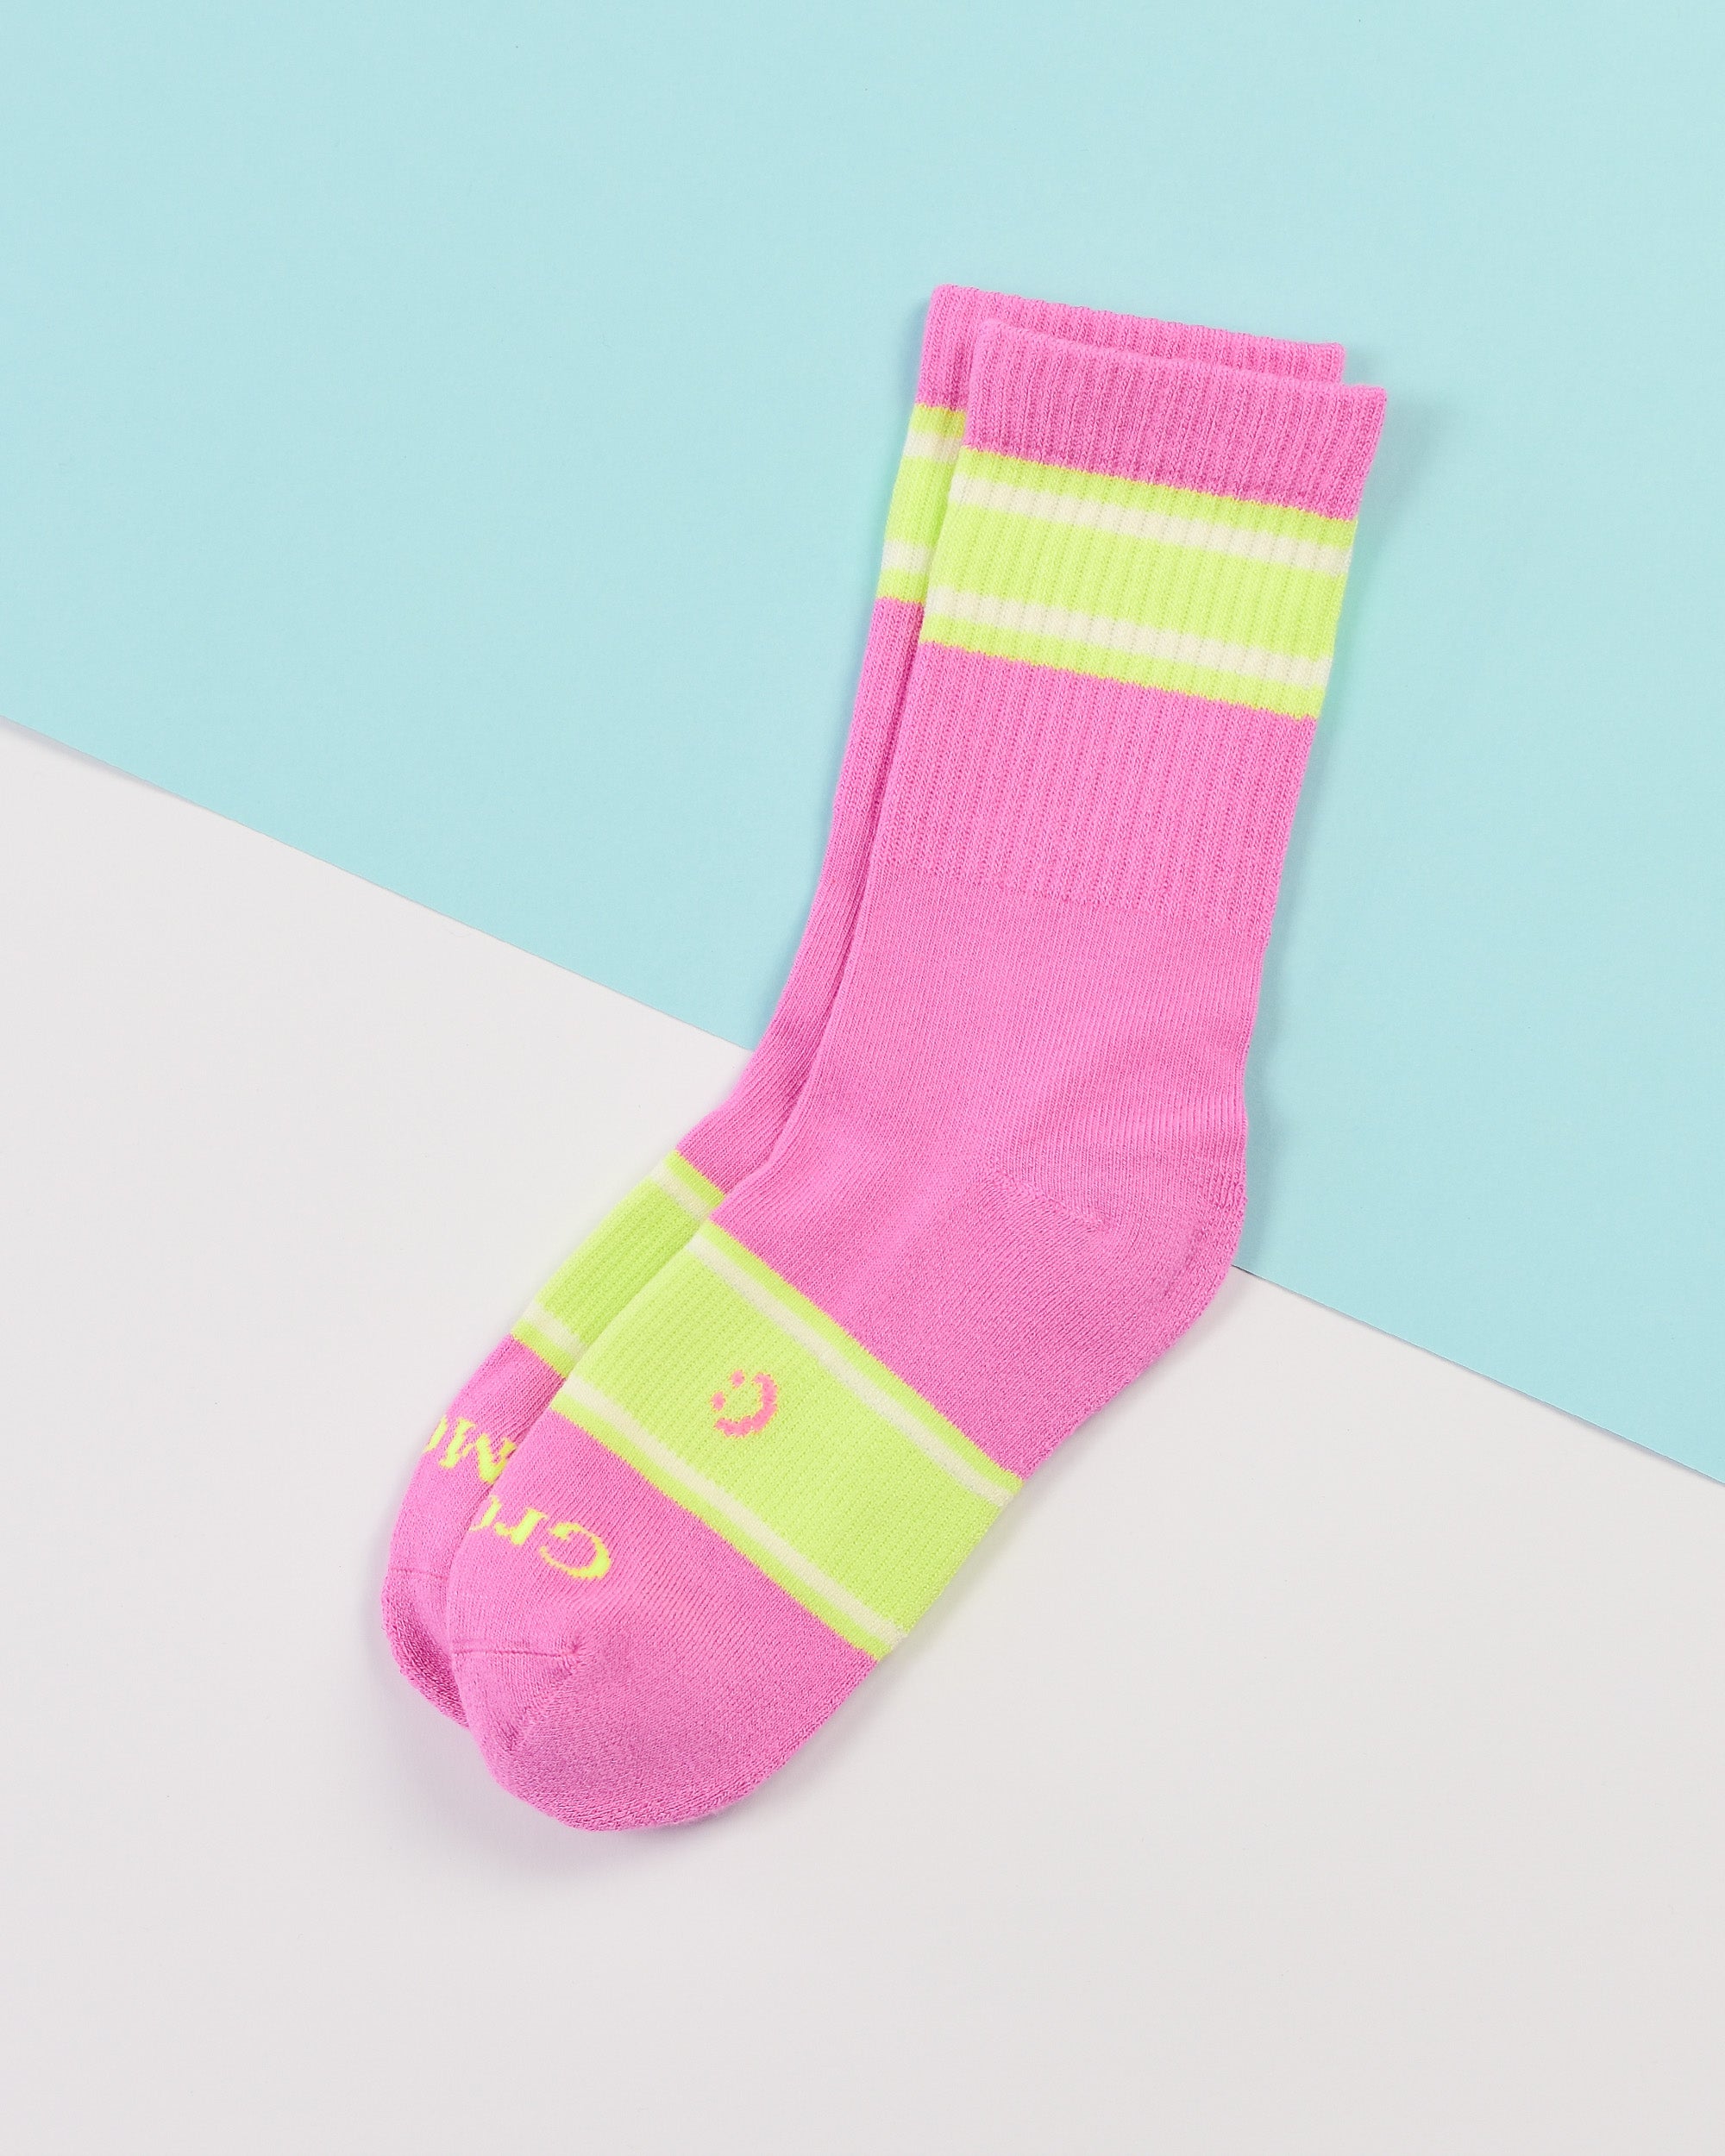 Underworks Baby Socks 2 Pack - Pink